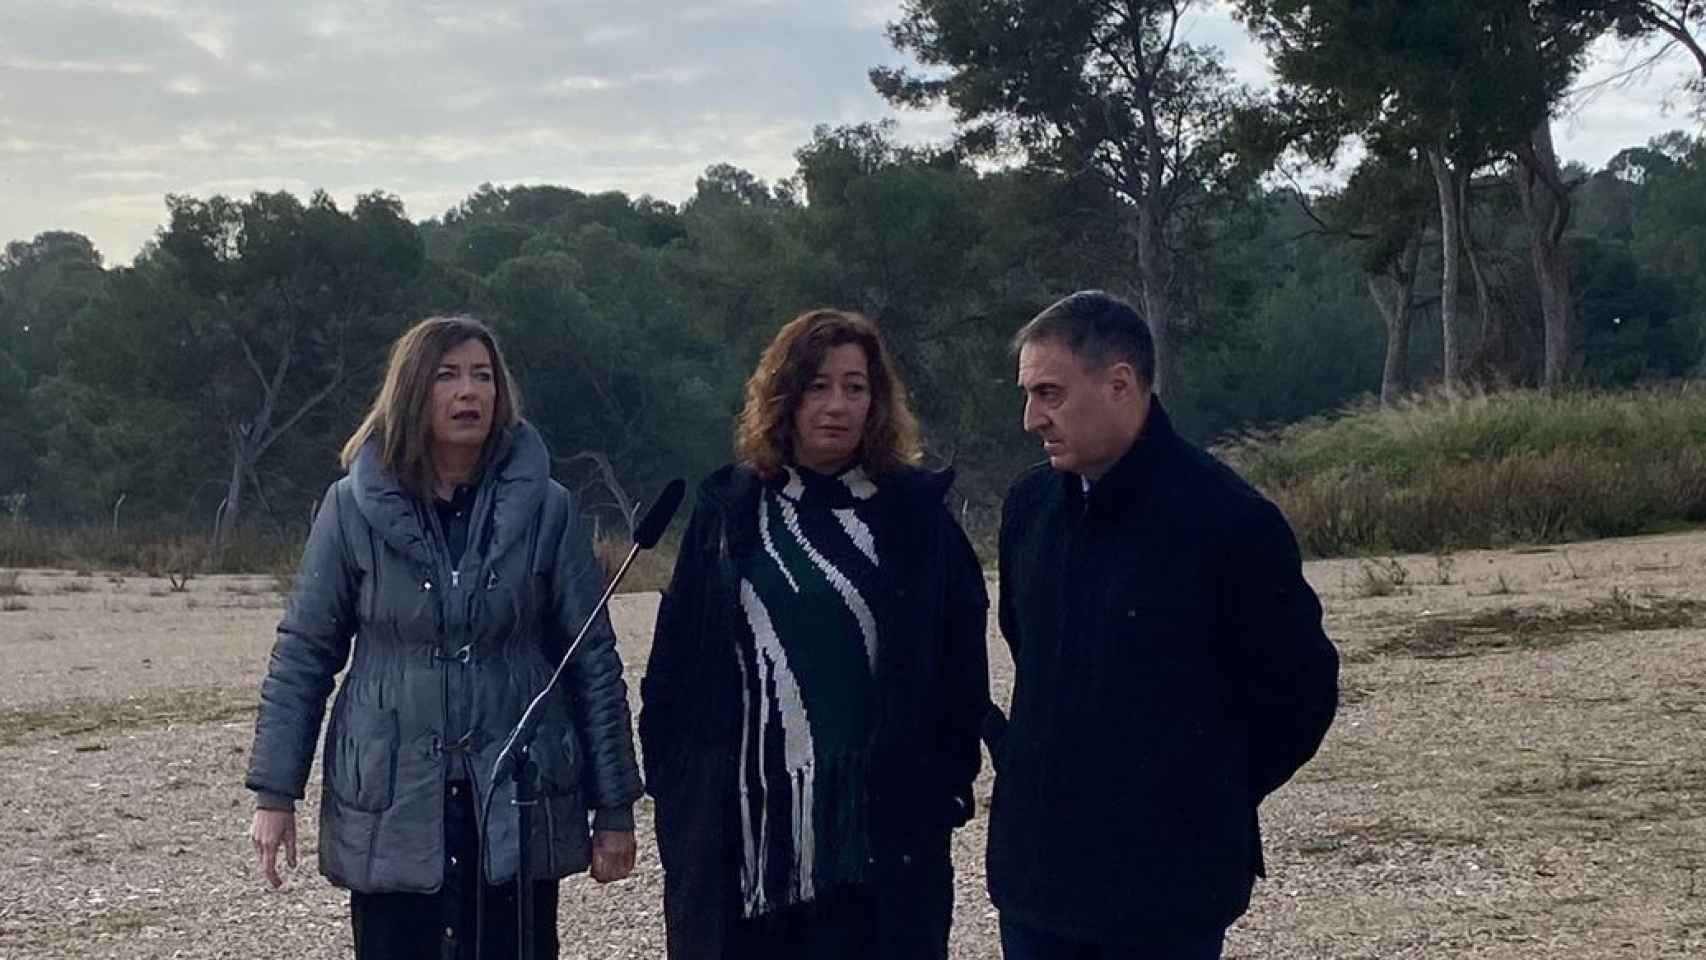 La consellera de Salud, Patricia Gómez; Armengol, y el director general del IbSalut, Manuel Palomino, en una imagen de archivo.